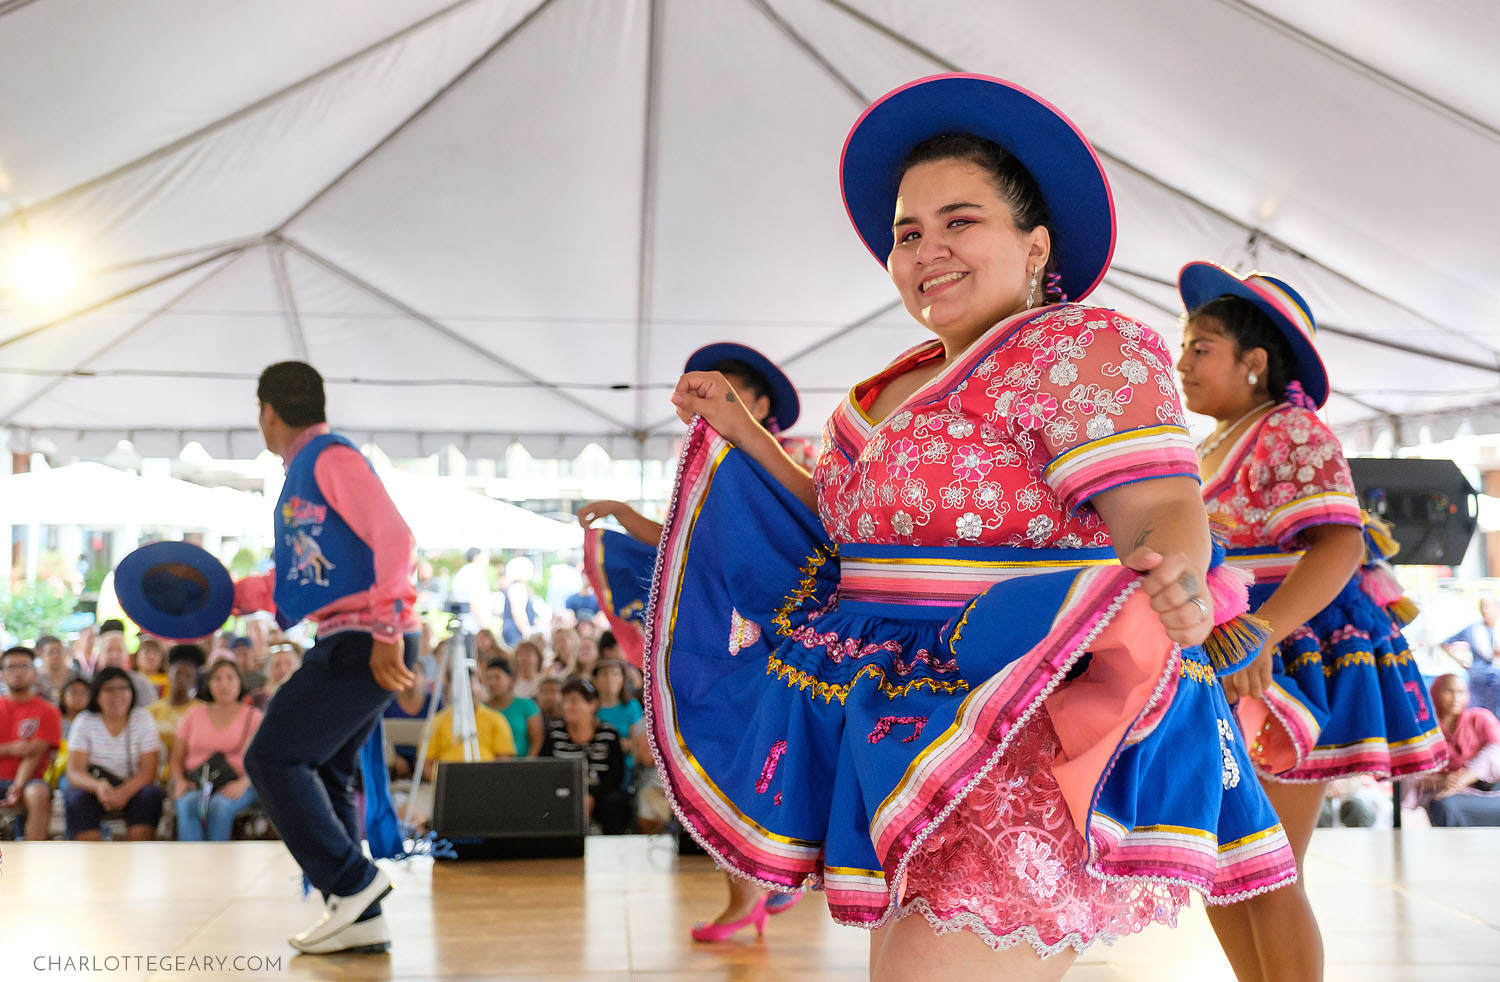 Bolivian dance performance by Tradiciones Bolivianas